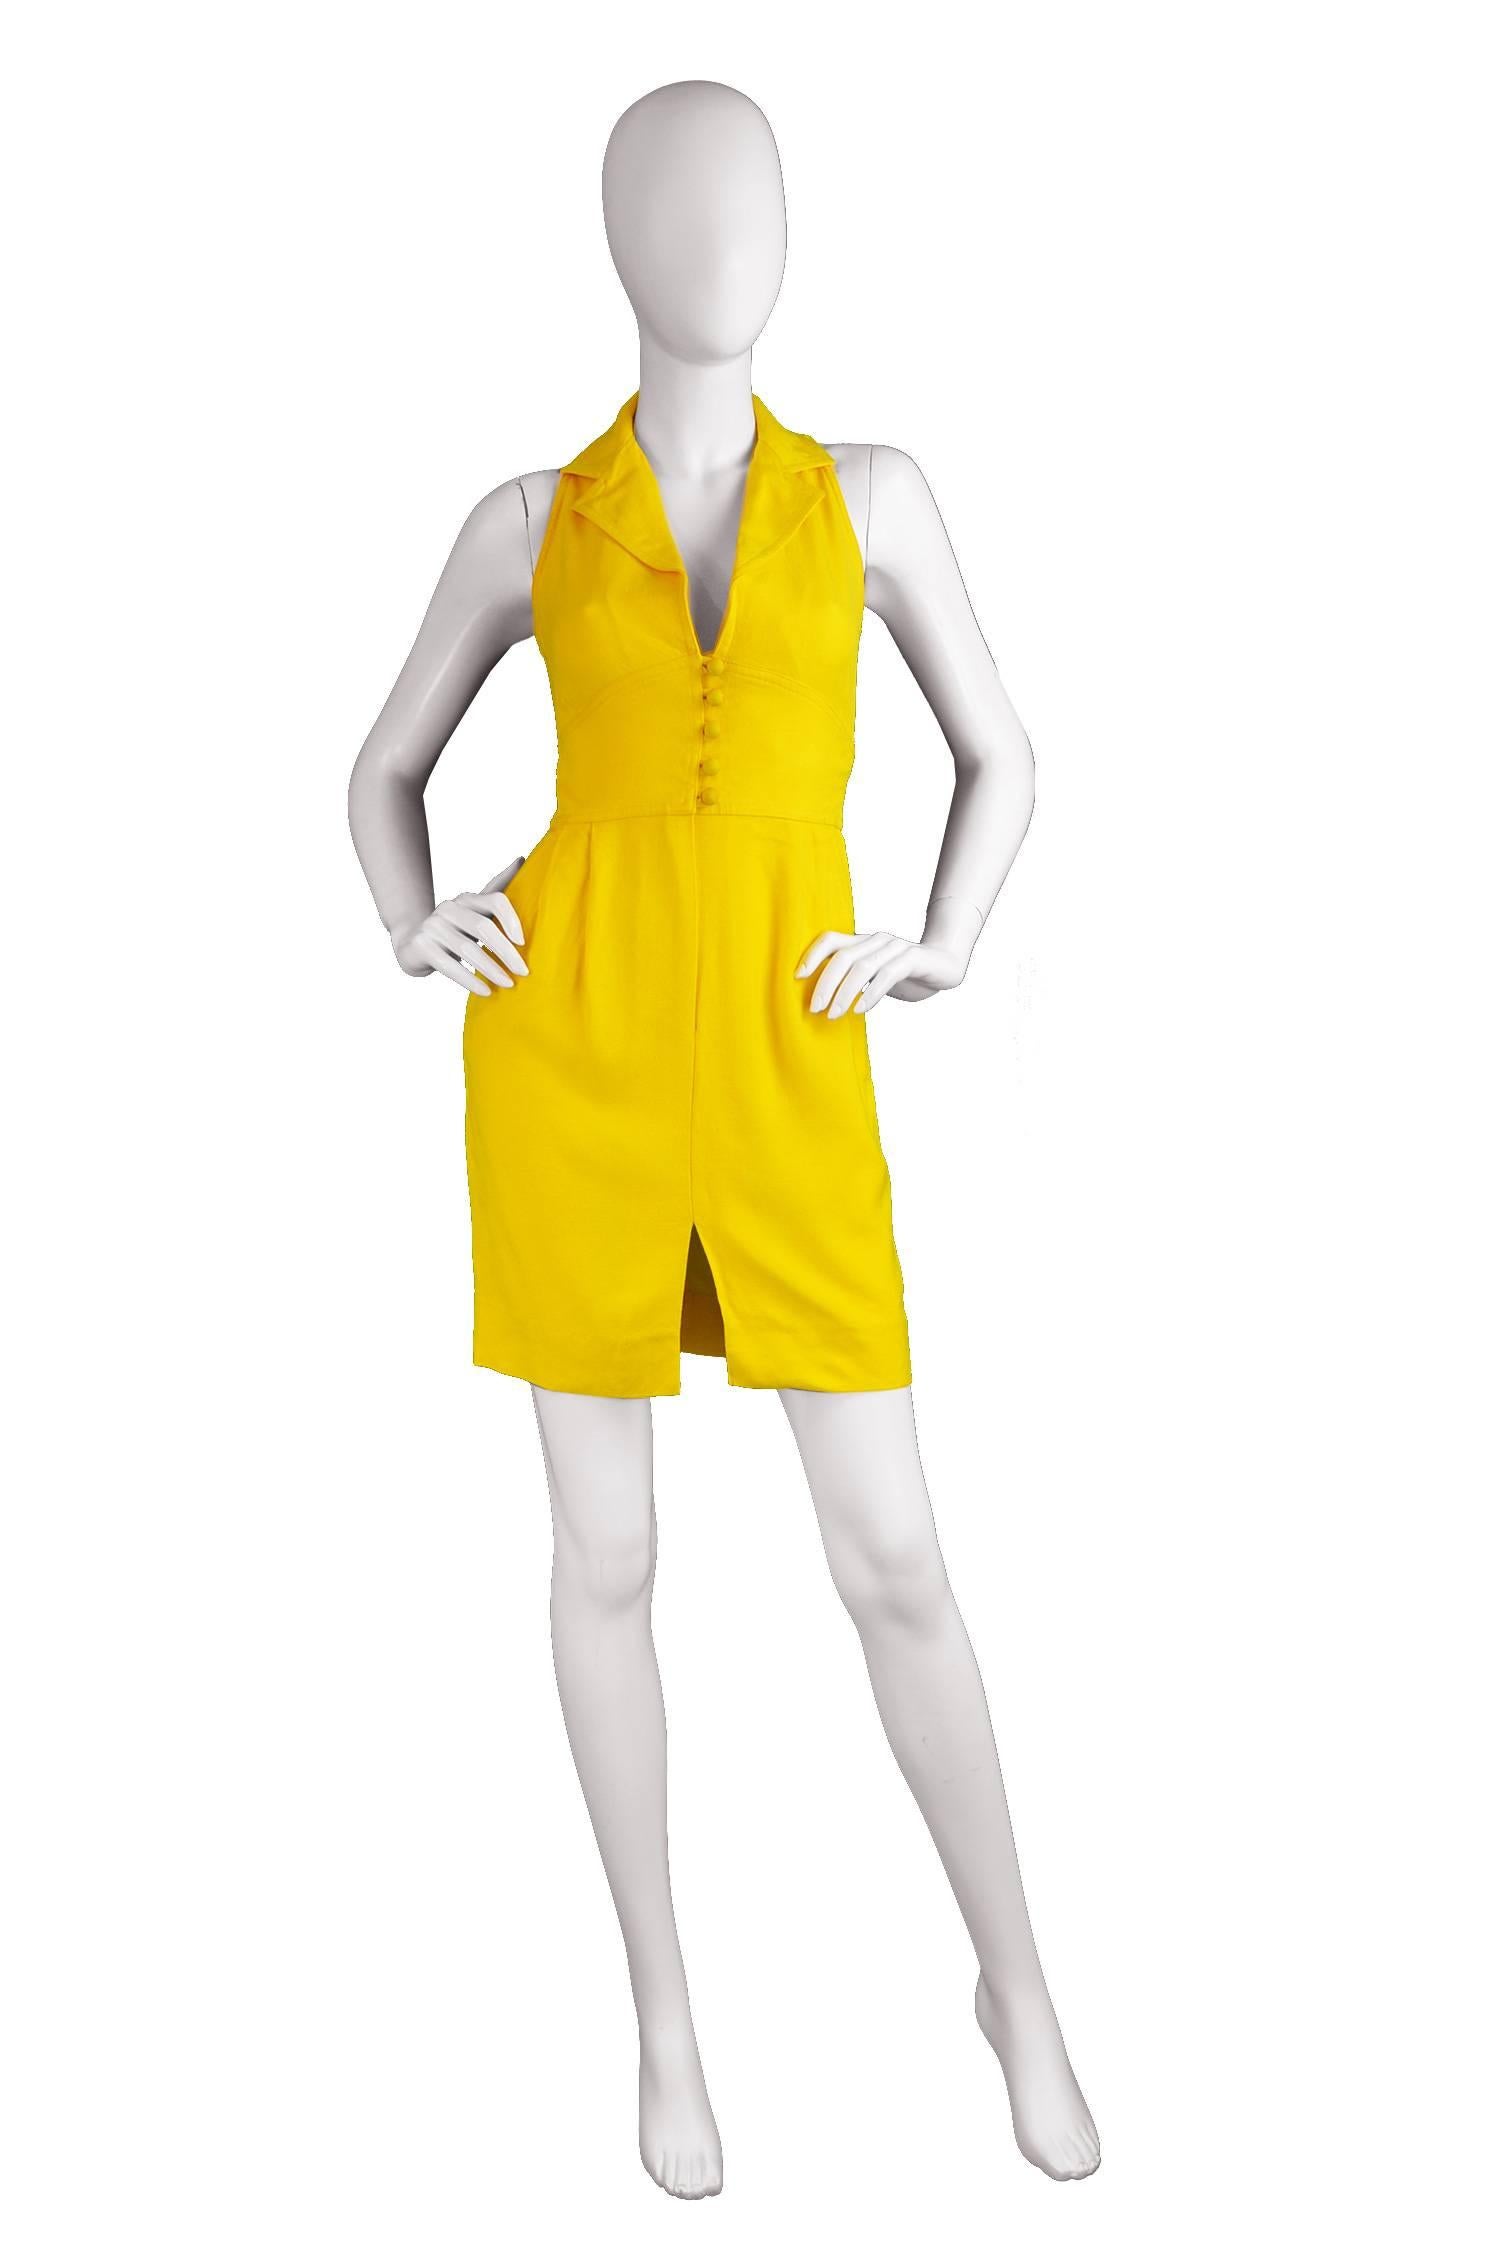 Carven Boutique Vintage Yellow Linen Mini Dress, 1960s

Please Click +CONTINUE READING to see measurements, description and condition.

Estimated Size: UK 6-8/ US 2-4/ EU 34-36. Please check measurements. 
Bust - 32” / 81cm
Waist - 25” /  63cm
Hips